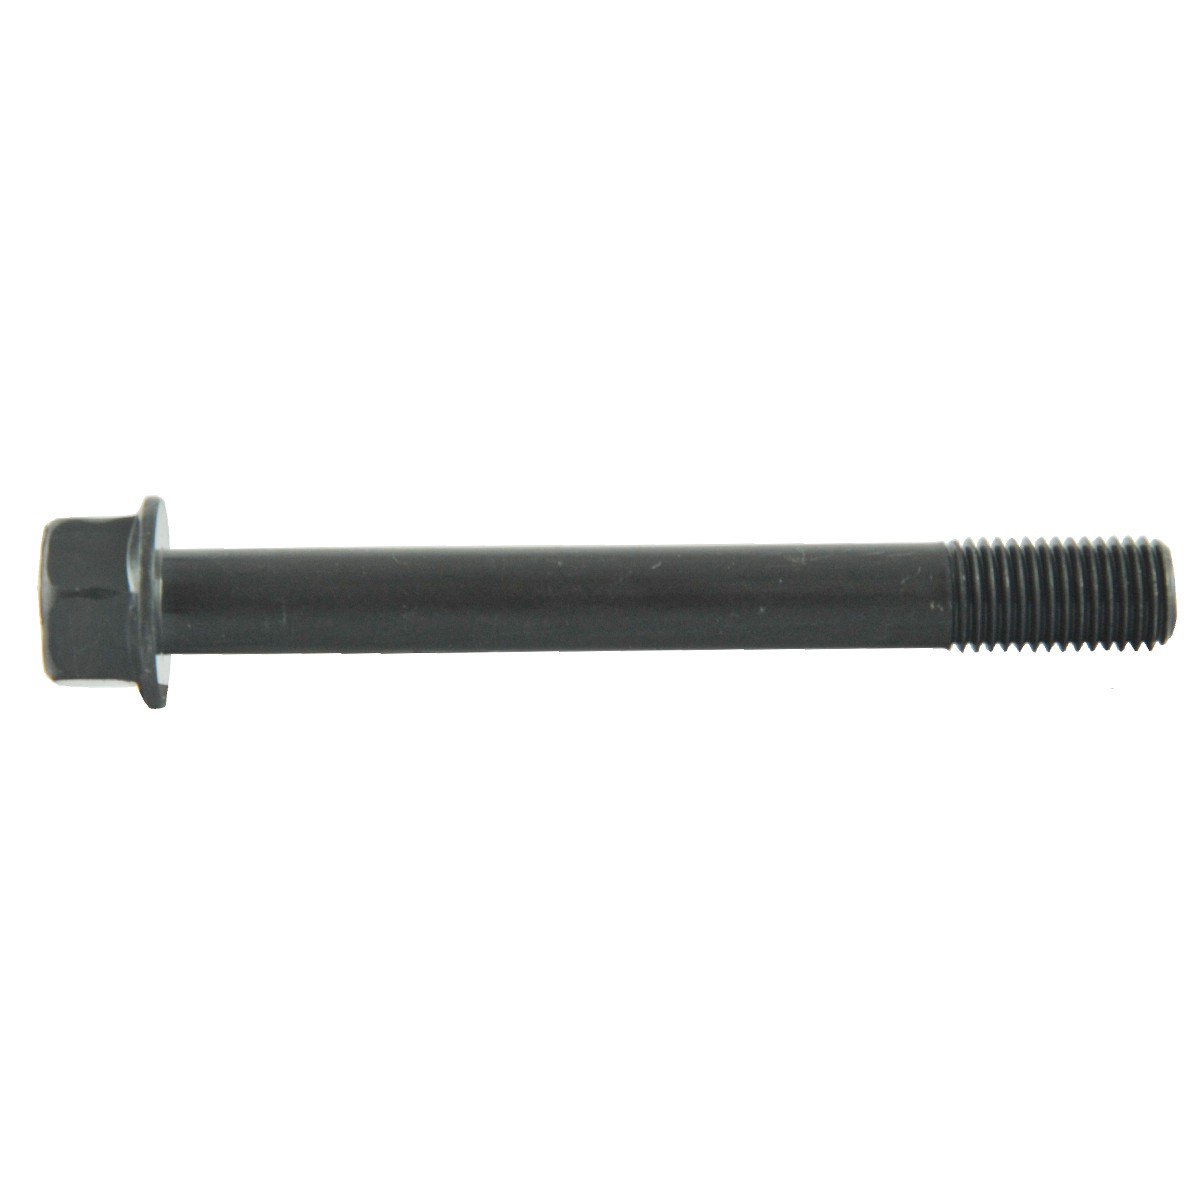 Schraube M10 x 1,25 x 86 mm / LS XJ25 / 31A0121100 / 40190353/40224938